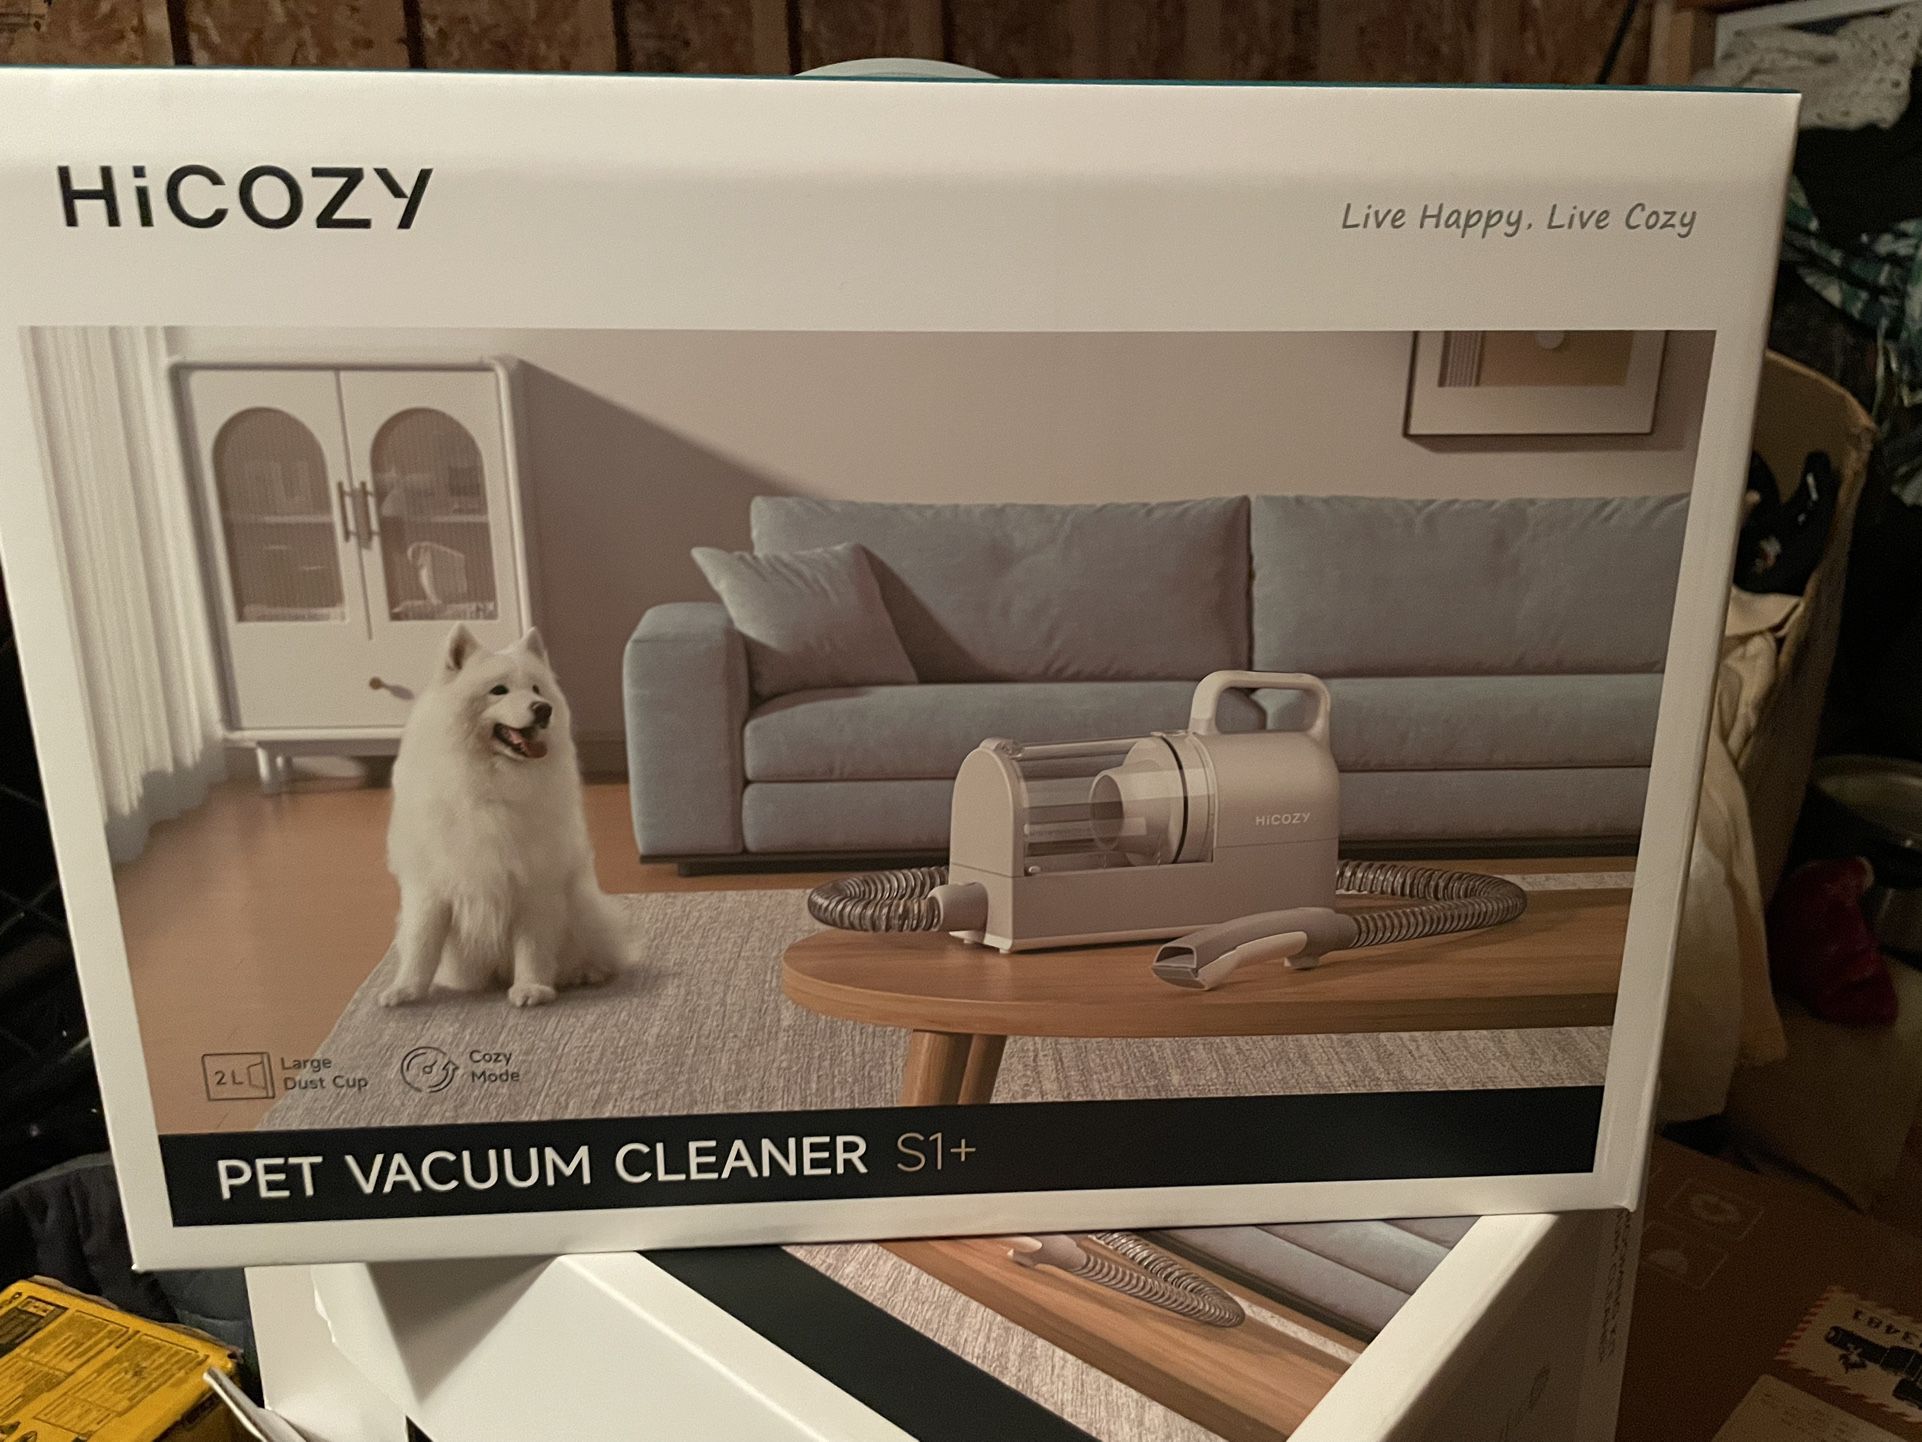 Hi Cozy Pet Vacuum Cleaner 